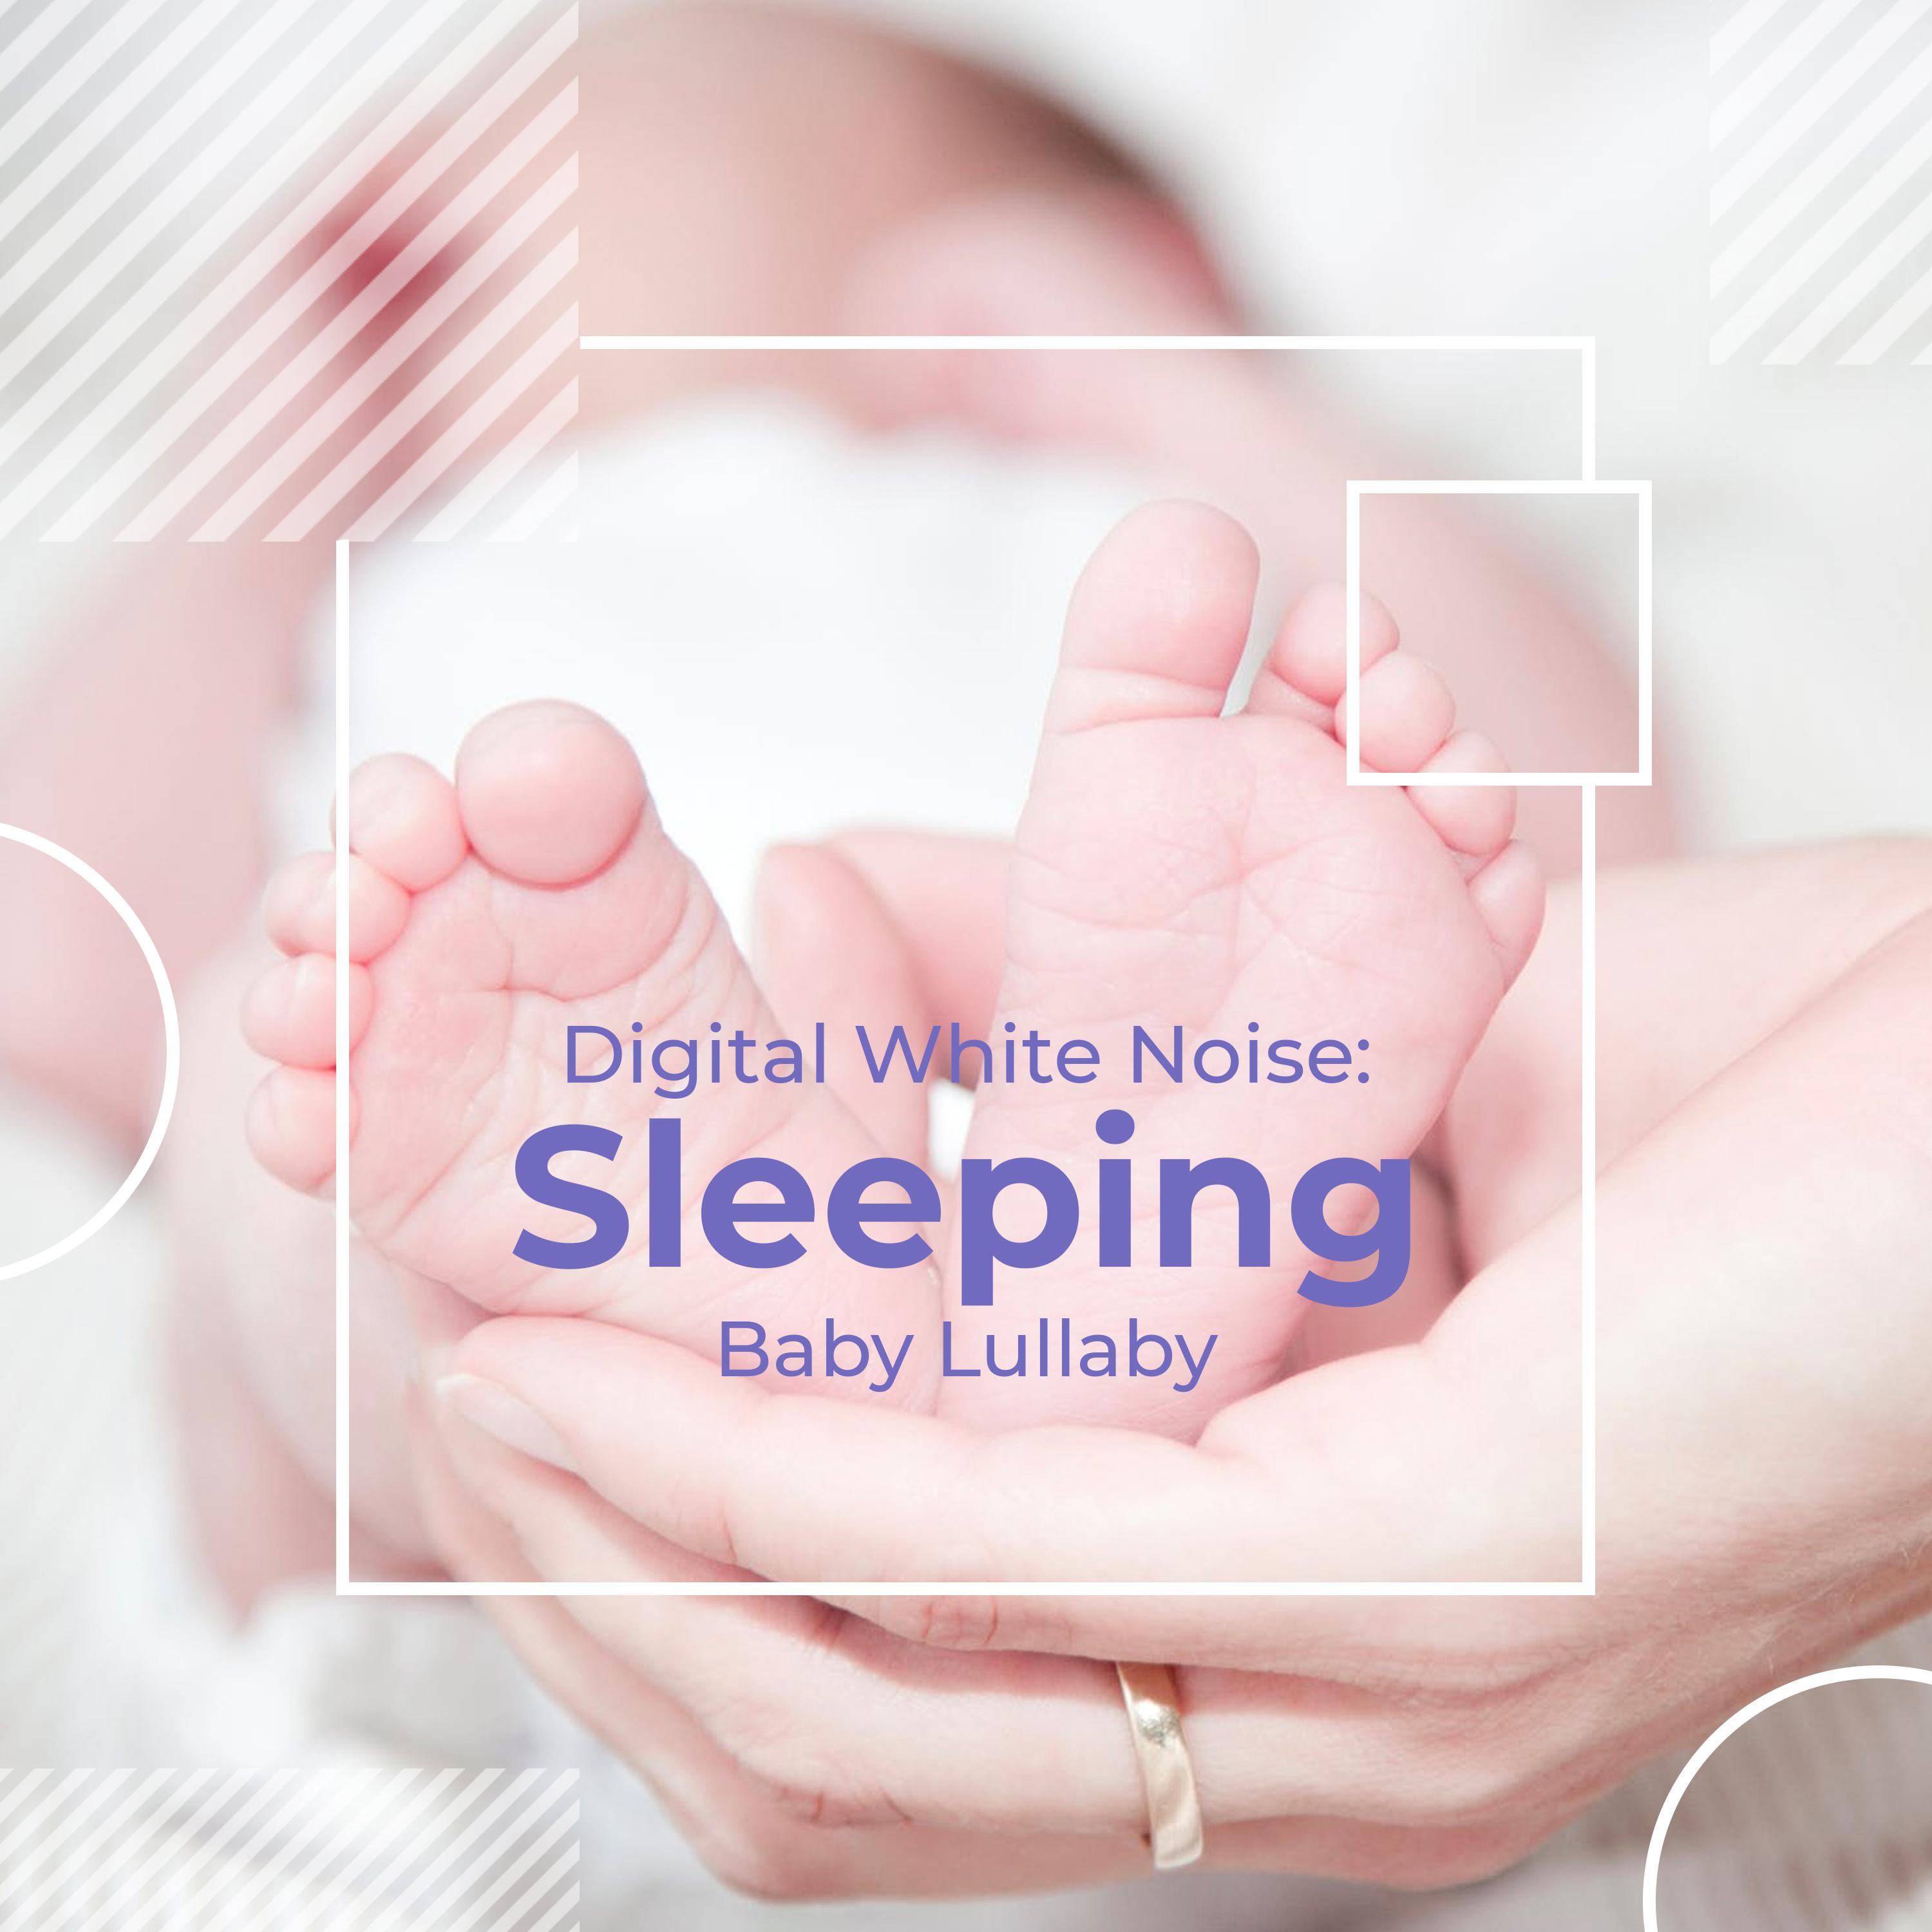 Digital White Noise: Sleeping